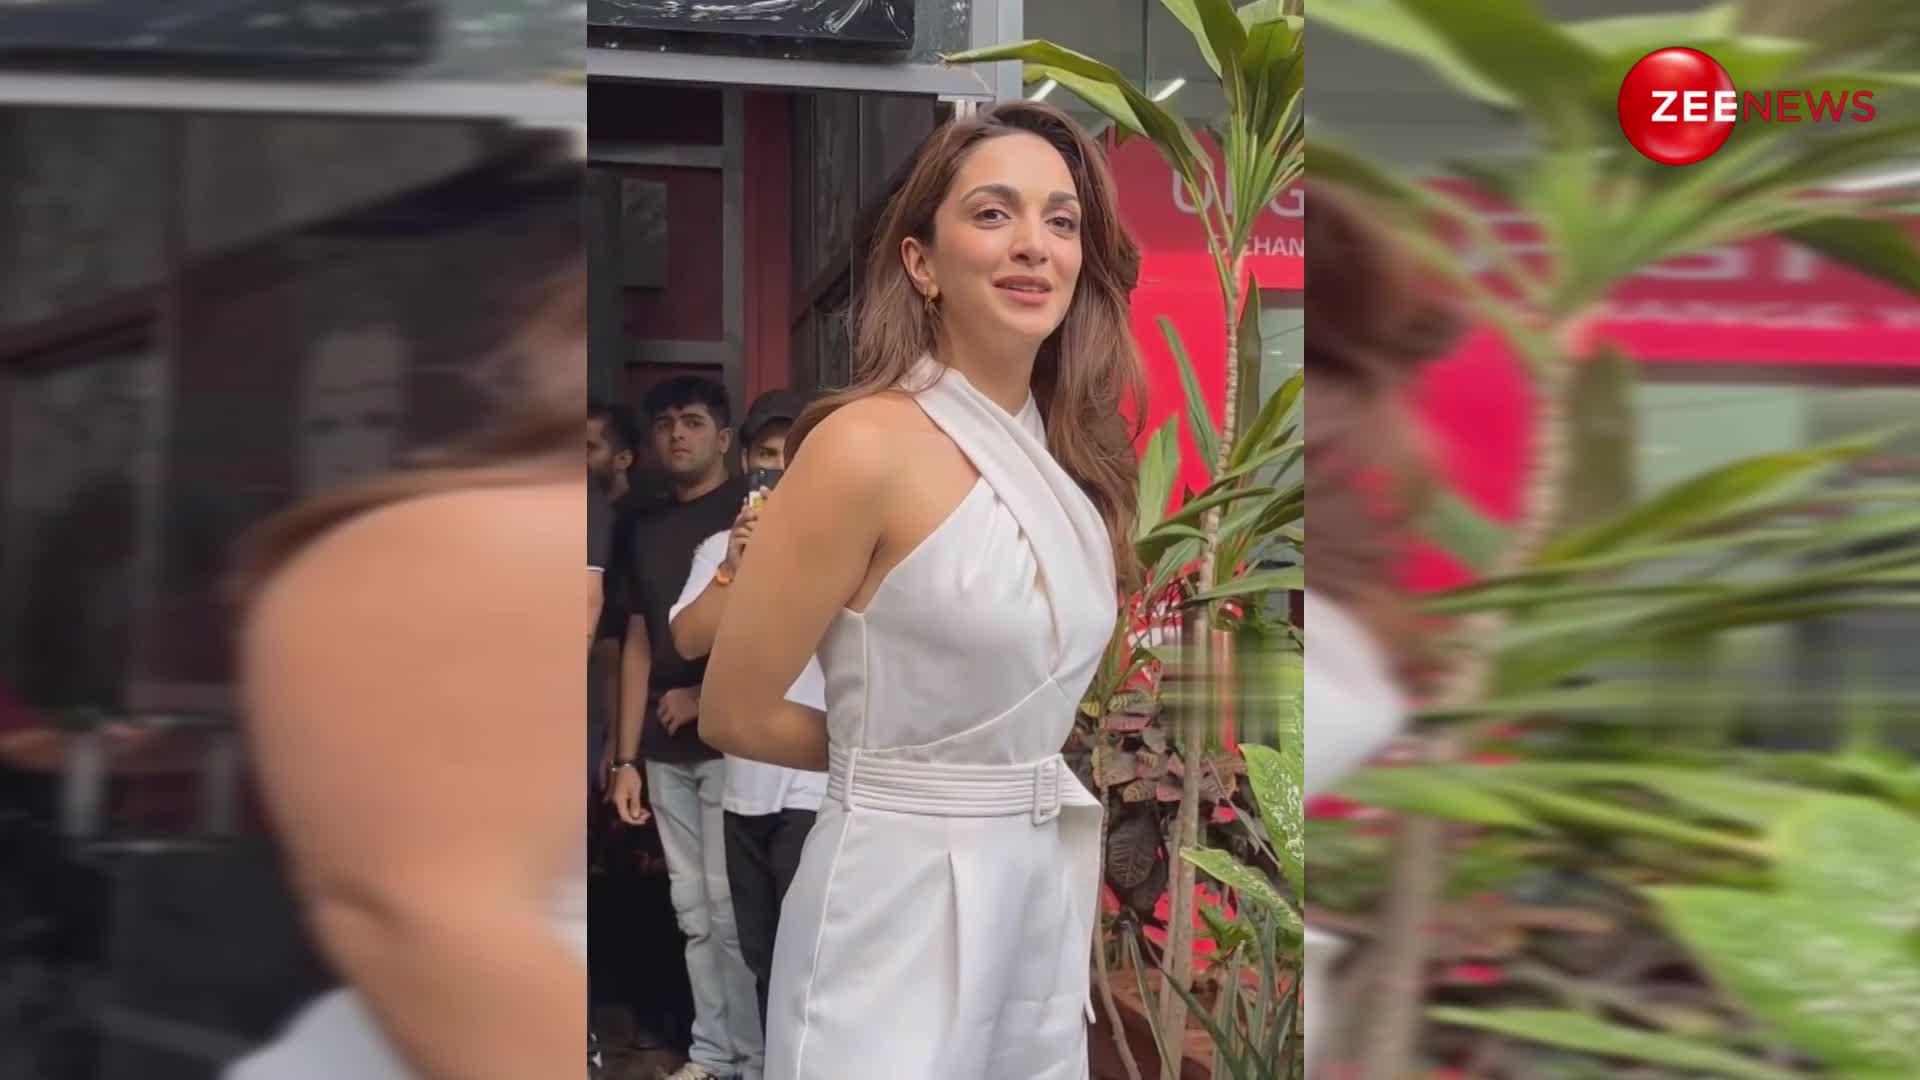 हाय! व्हाइट ड्रेस में बला की खूबसूरत लगती हैं Kiara Advani , फैंस को फ्लाइंग किस देकर किया मदहोश